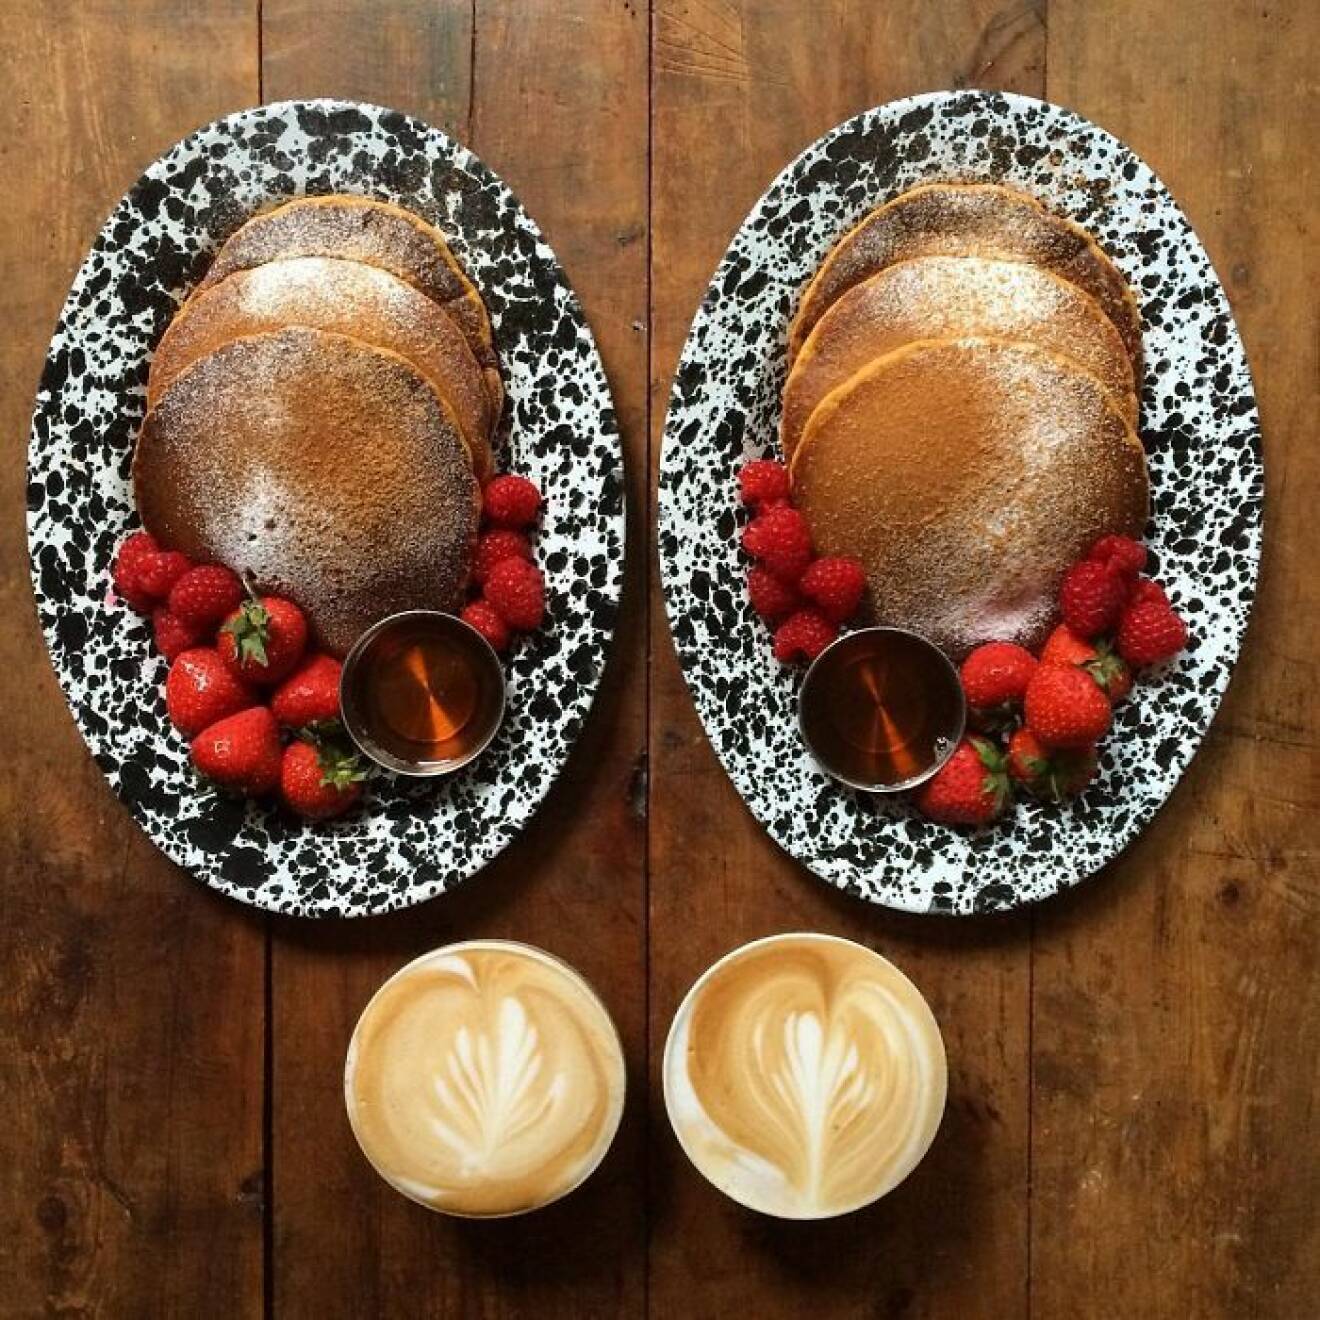 09. symmetry-breakfast-food-photography-michael-zee-104__700